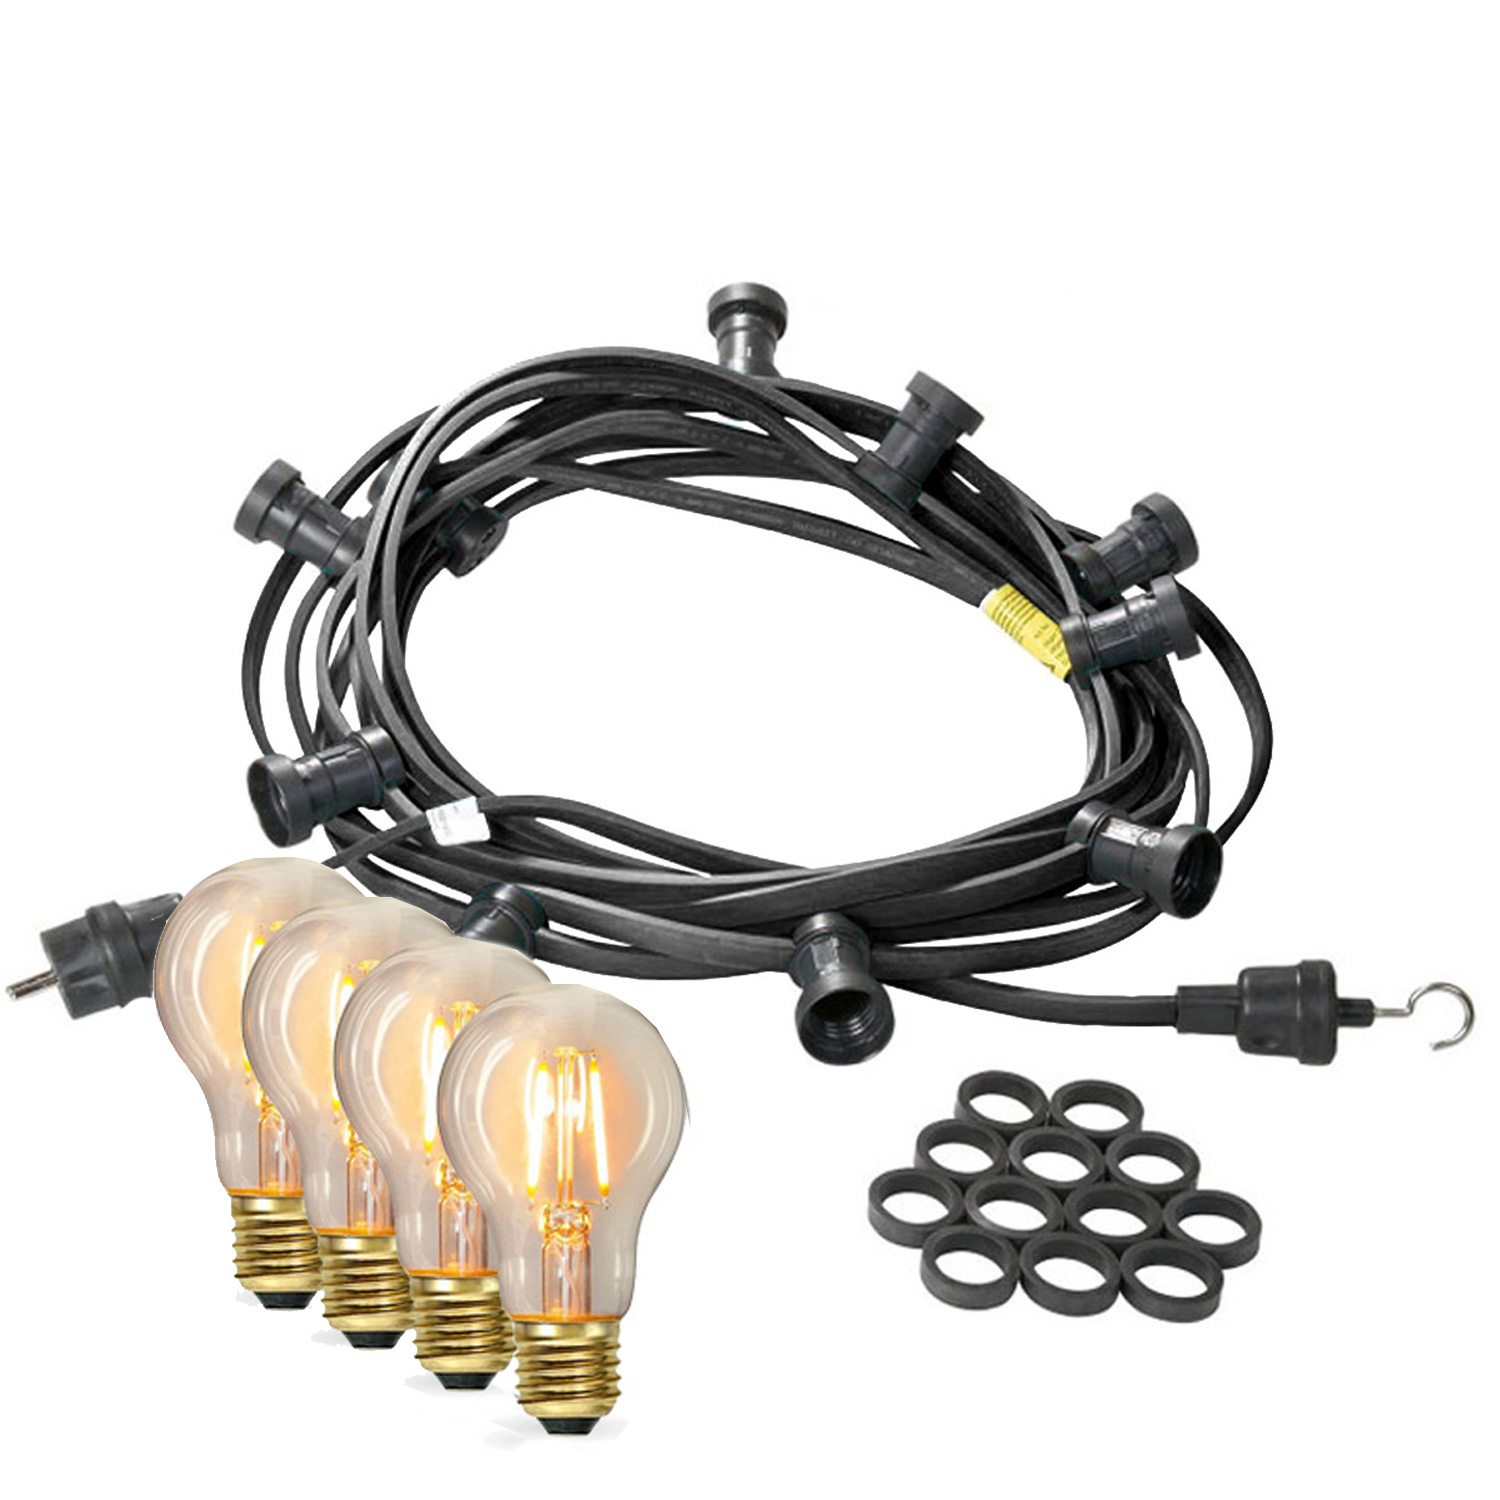 Illu-/Partylichterkette 20m - Außenlichterkette - Made in Germany - 40 x Edison LED Filamentlampen